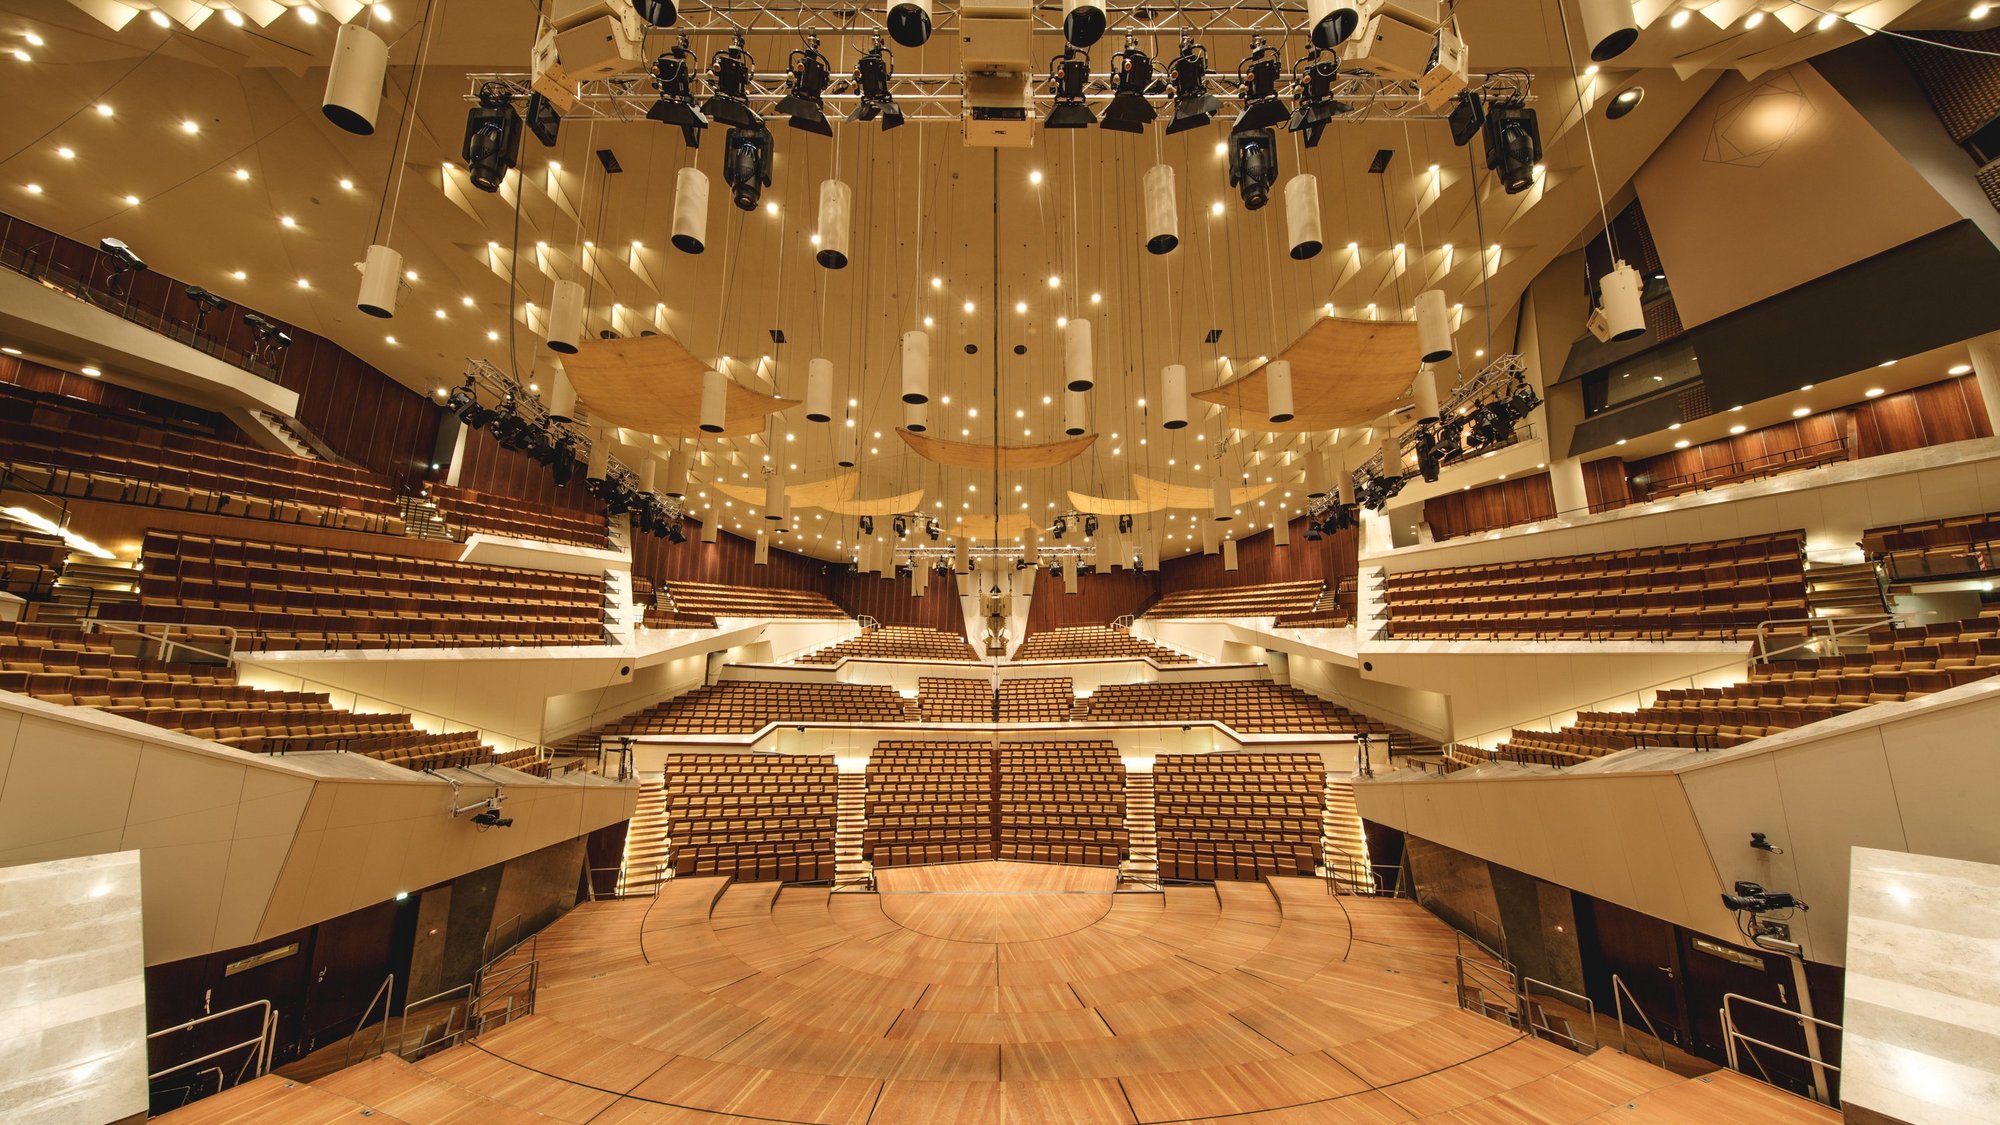 Main Auditorium of the Philharmonie Berlin